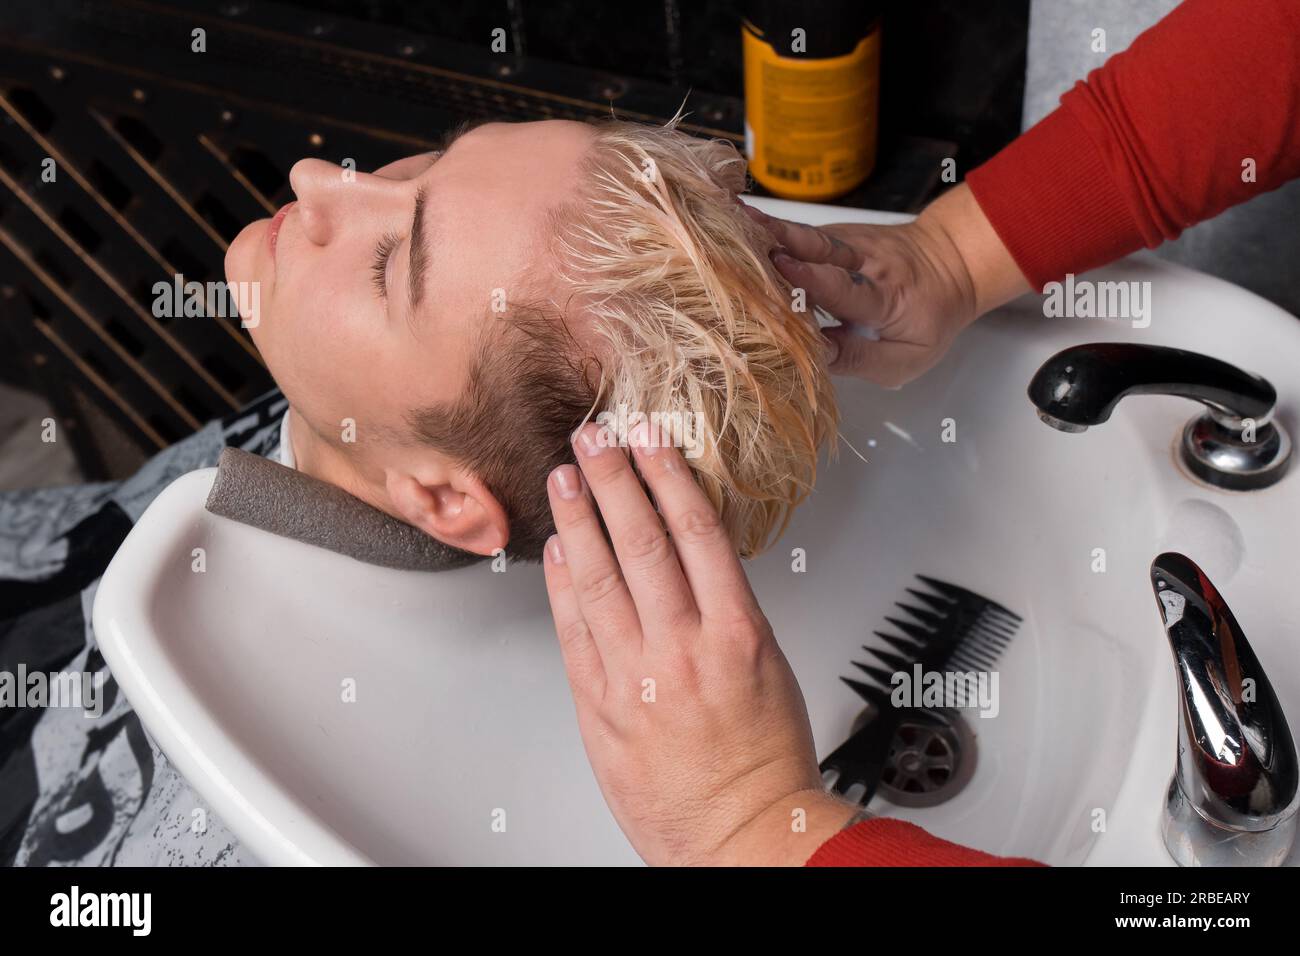 Die Hände des Friseurs massieren den Kopf des Kunden, nachdem er sich die Haare gewaschen hat, bevor er den Friseur geschnitten hat. Stockfoto